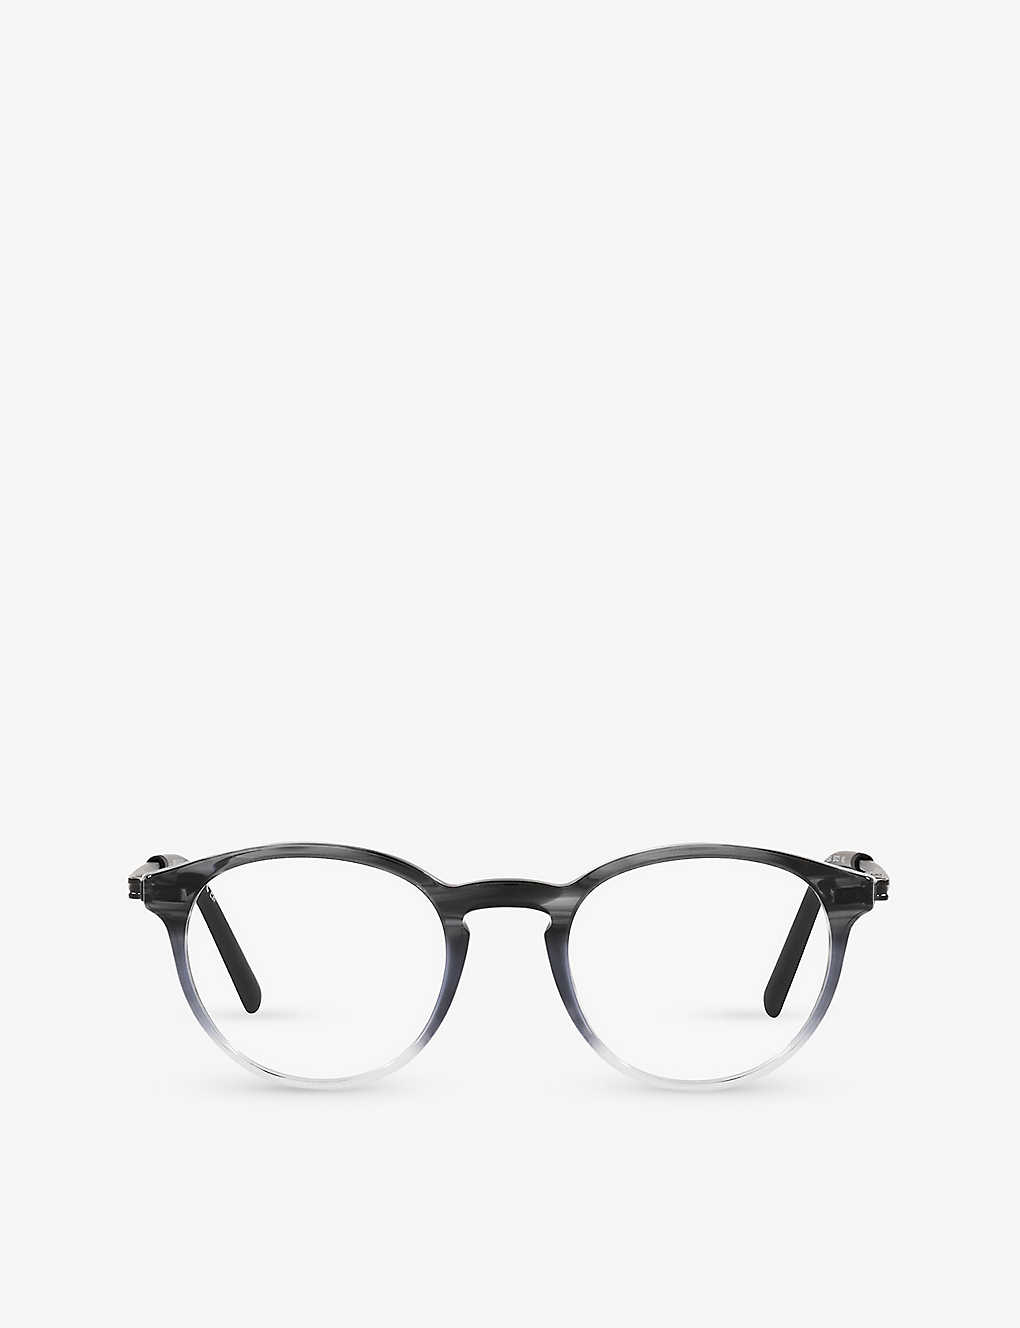 Bvlgari Bv3052 Phantos-frame Acetate Glasses In Grey